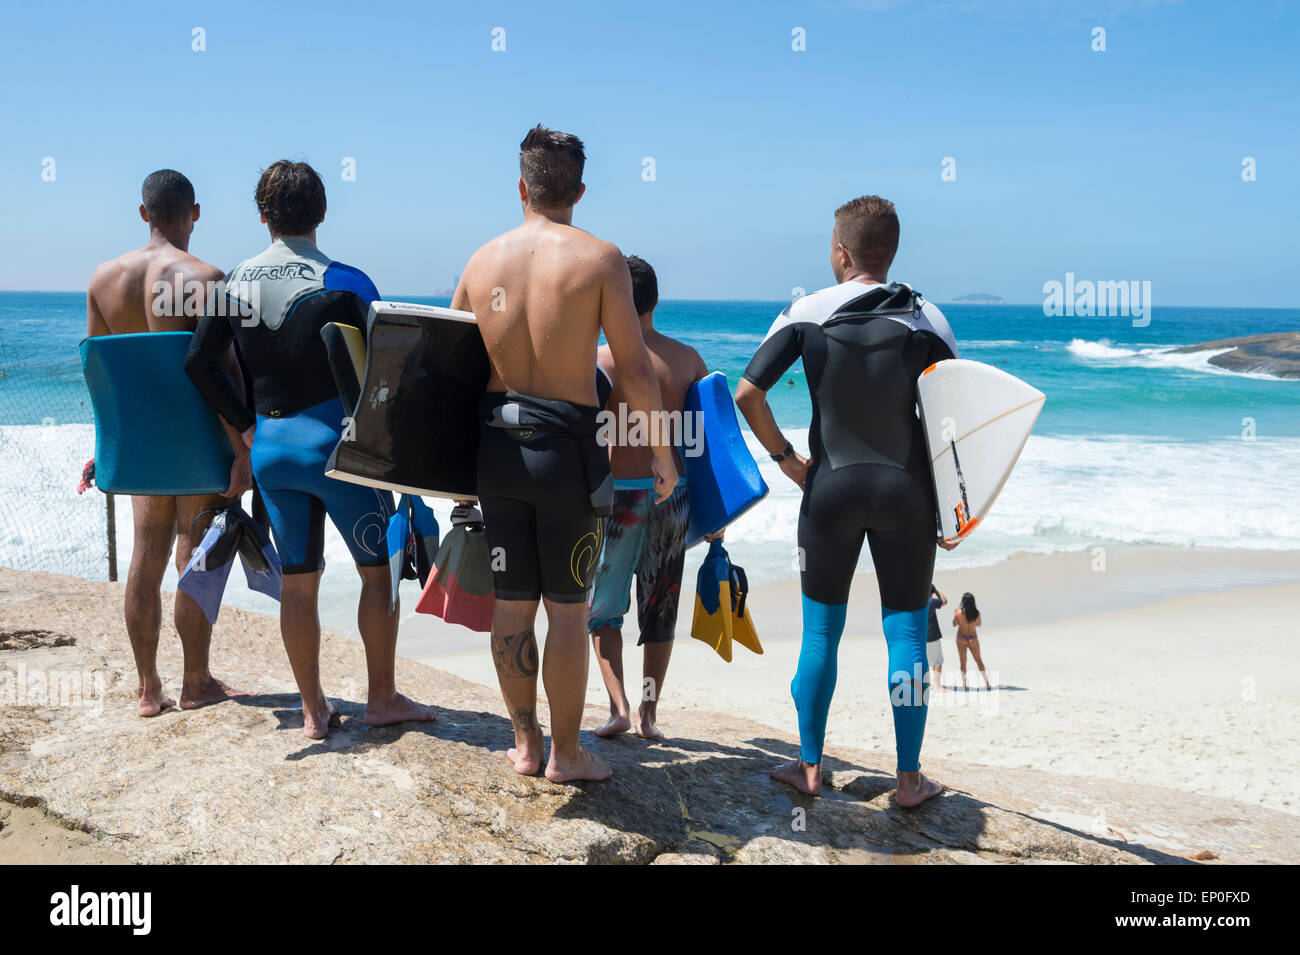 RIO DE JANEIRO, Brasilien - 24. März 2015: Gruppe von jungen brasilianischen Surfer stehen mit Blick auf die Wellen an der Praia Diabo. Stockfoto